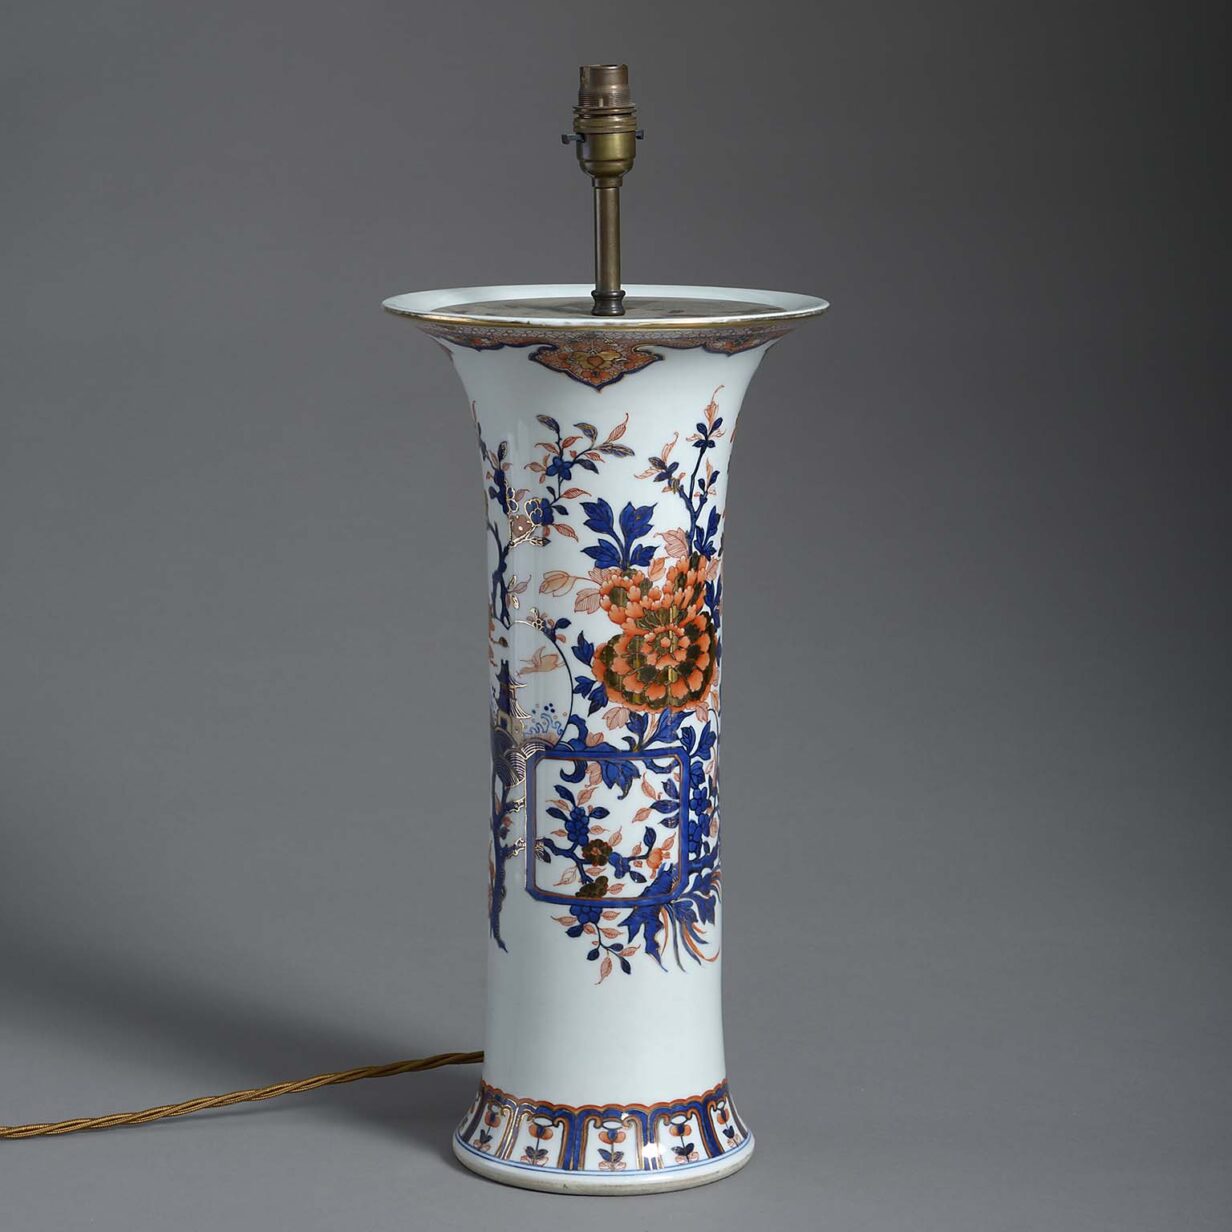 Masons ironstone vase lamp